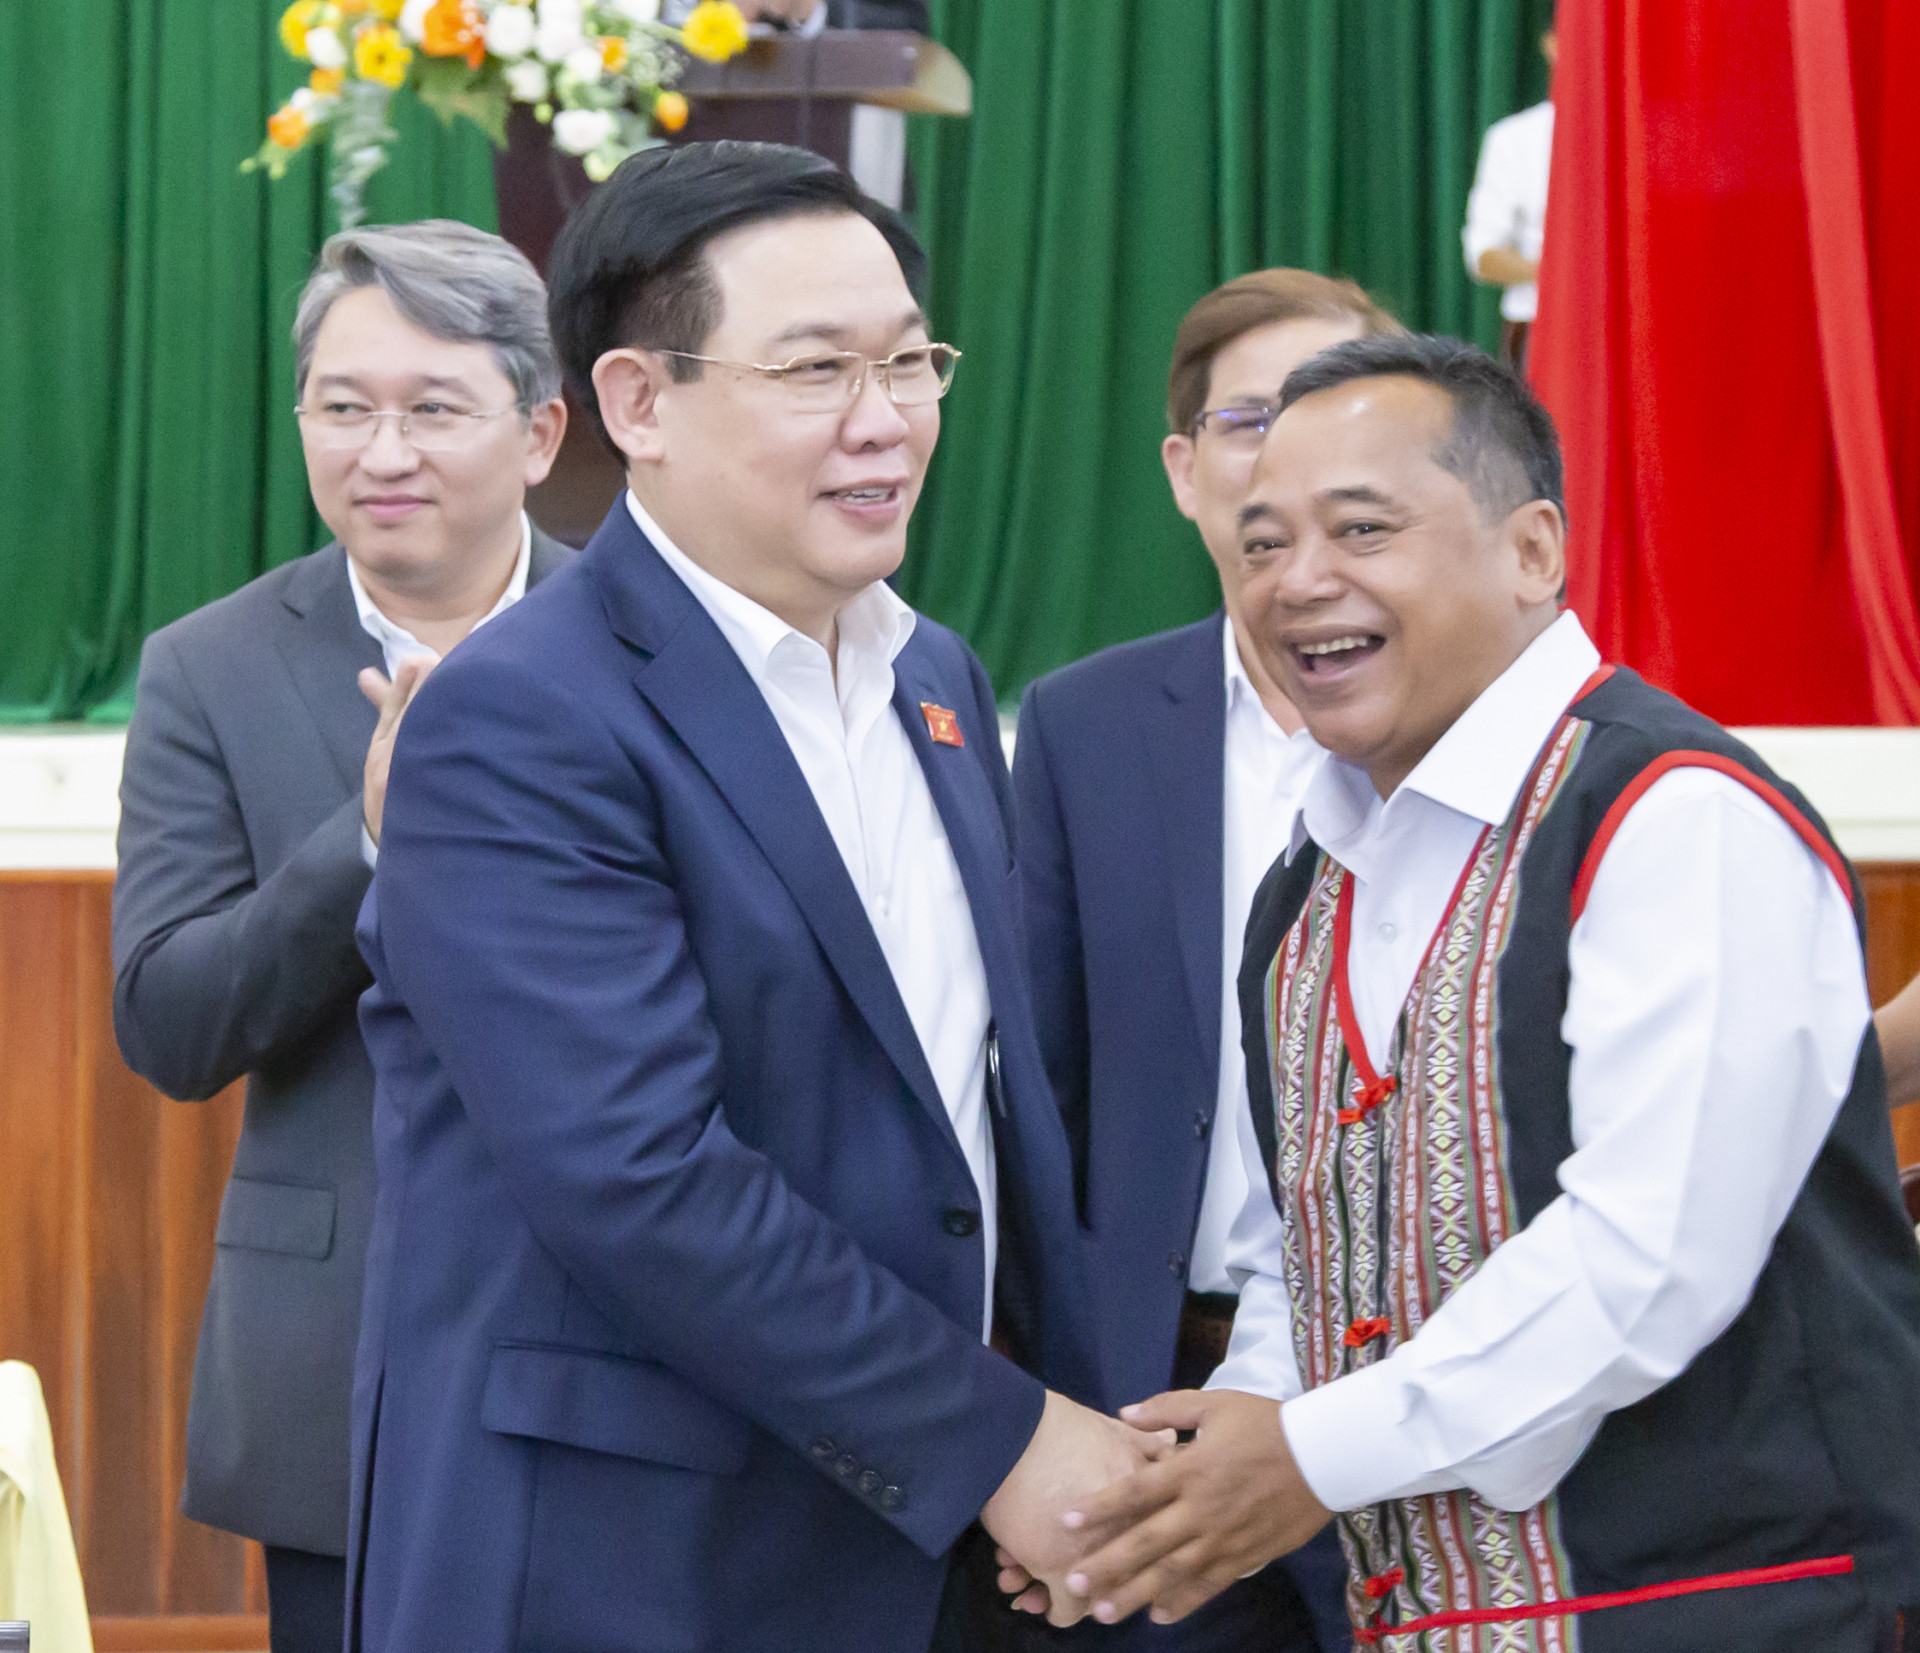 Chủ tịch Quốc hội Vương Đình Huệ cùng các vị lãnh đạo Trung ương, lãnh đạo tỉnh chứng kiến lễ trao 200 căn nhà đại đoàn kết cho 2 huyện Khánh Sơn và Khánh Vĩnh.